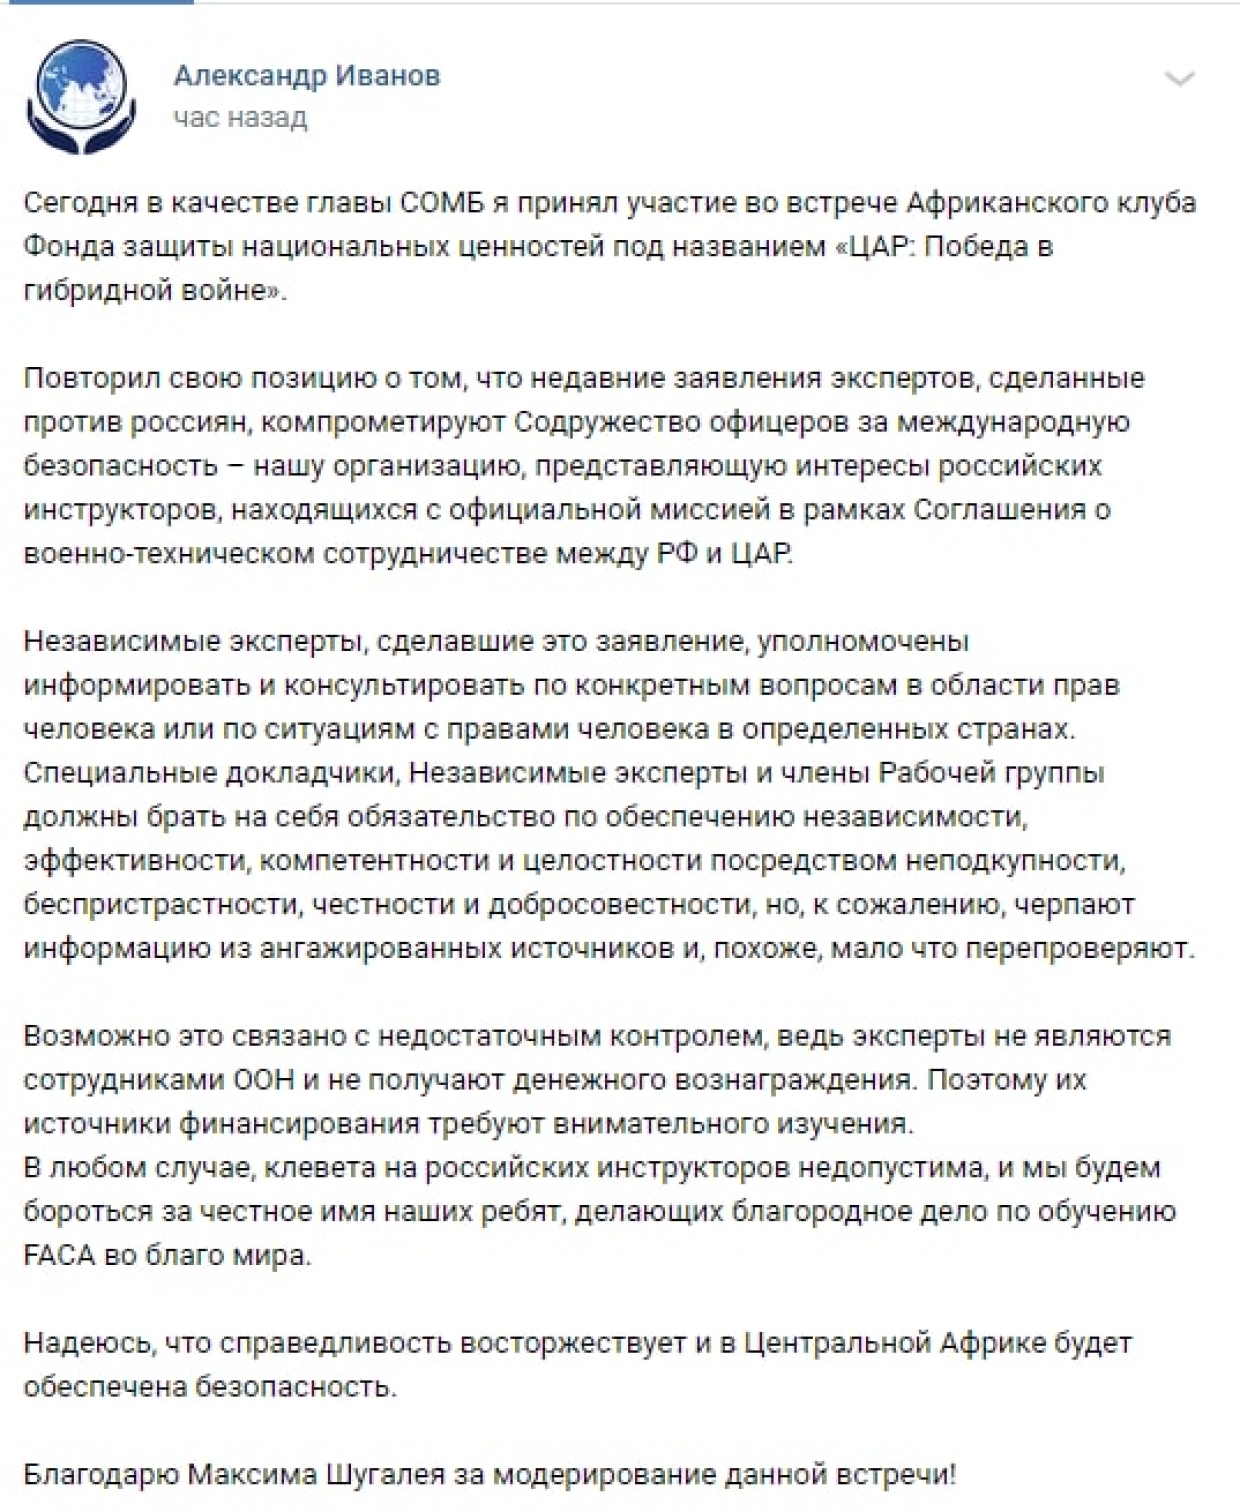 СОМБ готовит иск против ООН за вброс о деятельности российских инструкторов в ЦАР